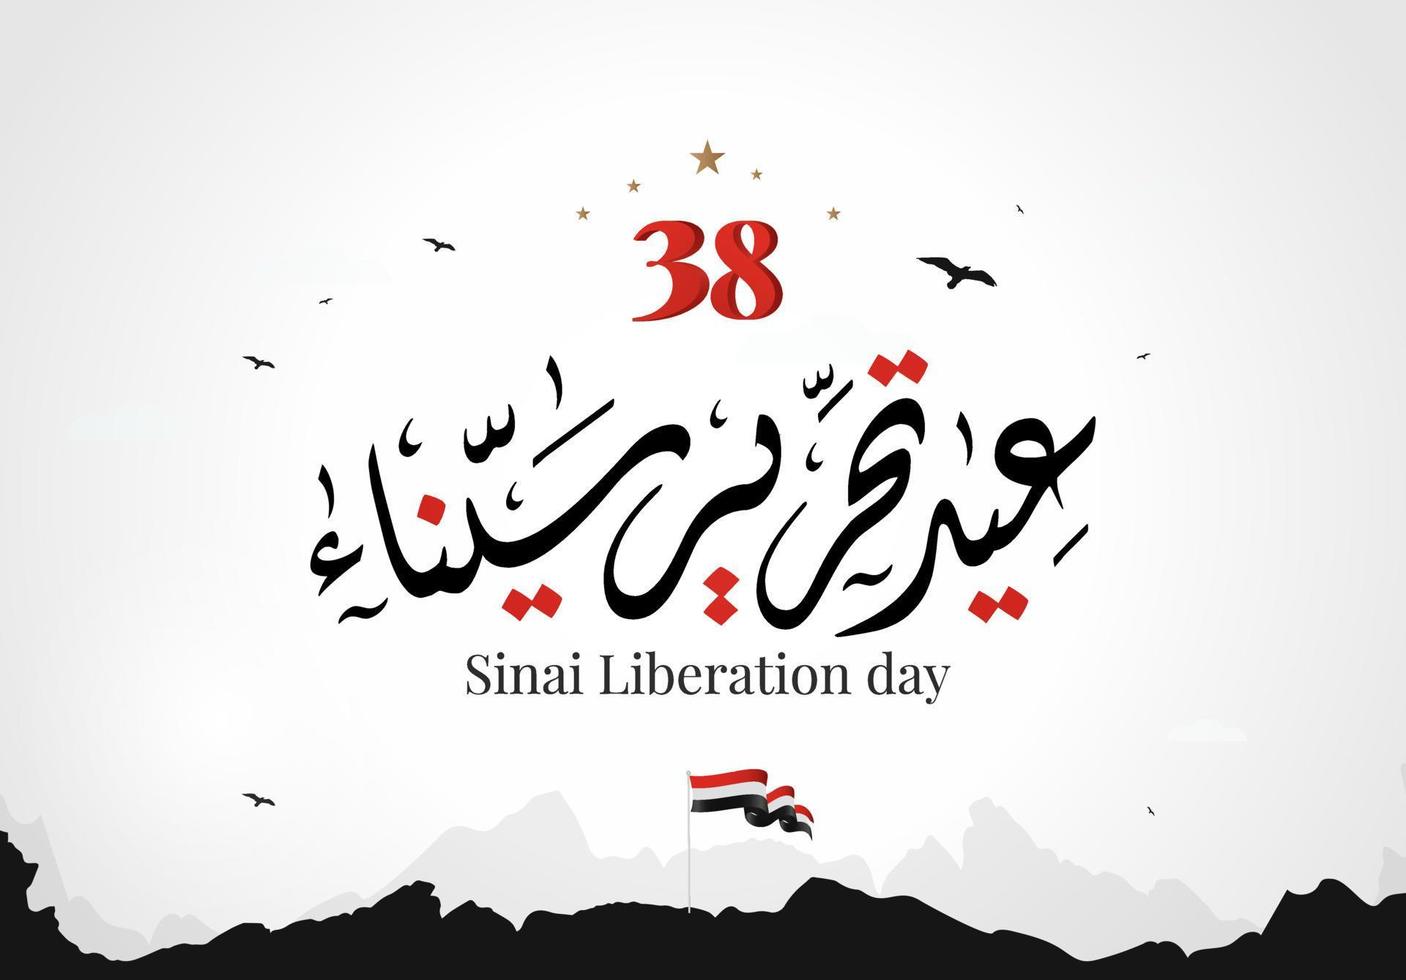 ägypten 6. oktober krieg 1973 arabische kalligraphie vektorillustration. Sinai-Unabhängigkeitstag, Sinai-Befreiungstag 25. April. vektor